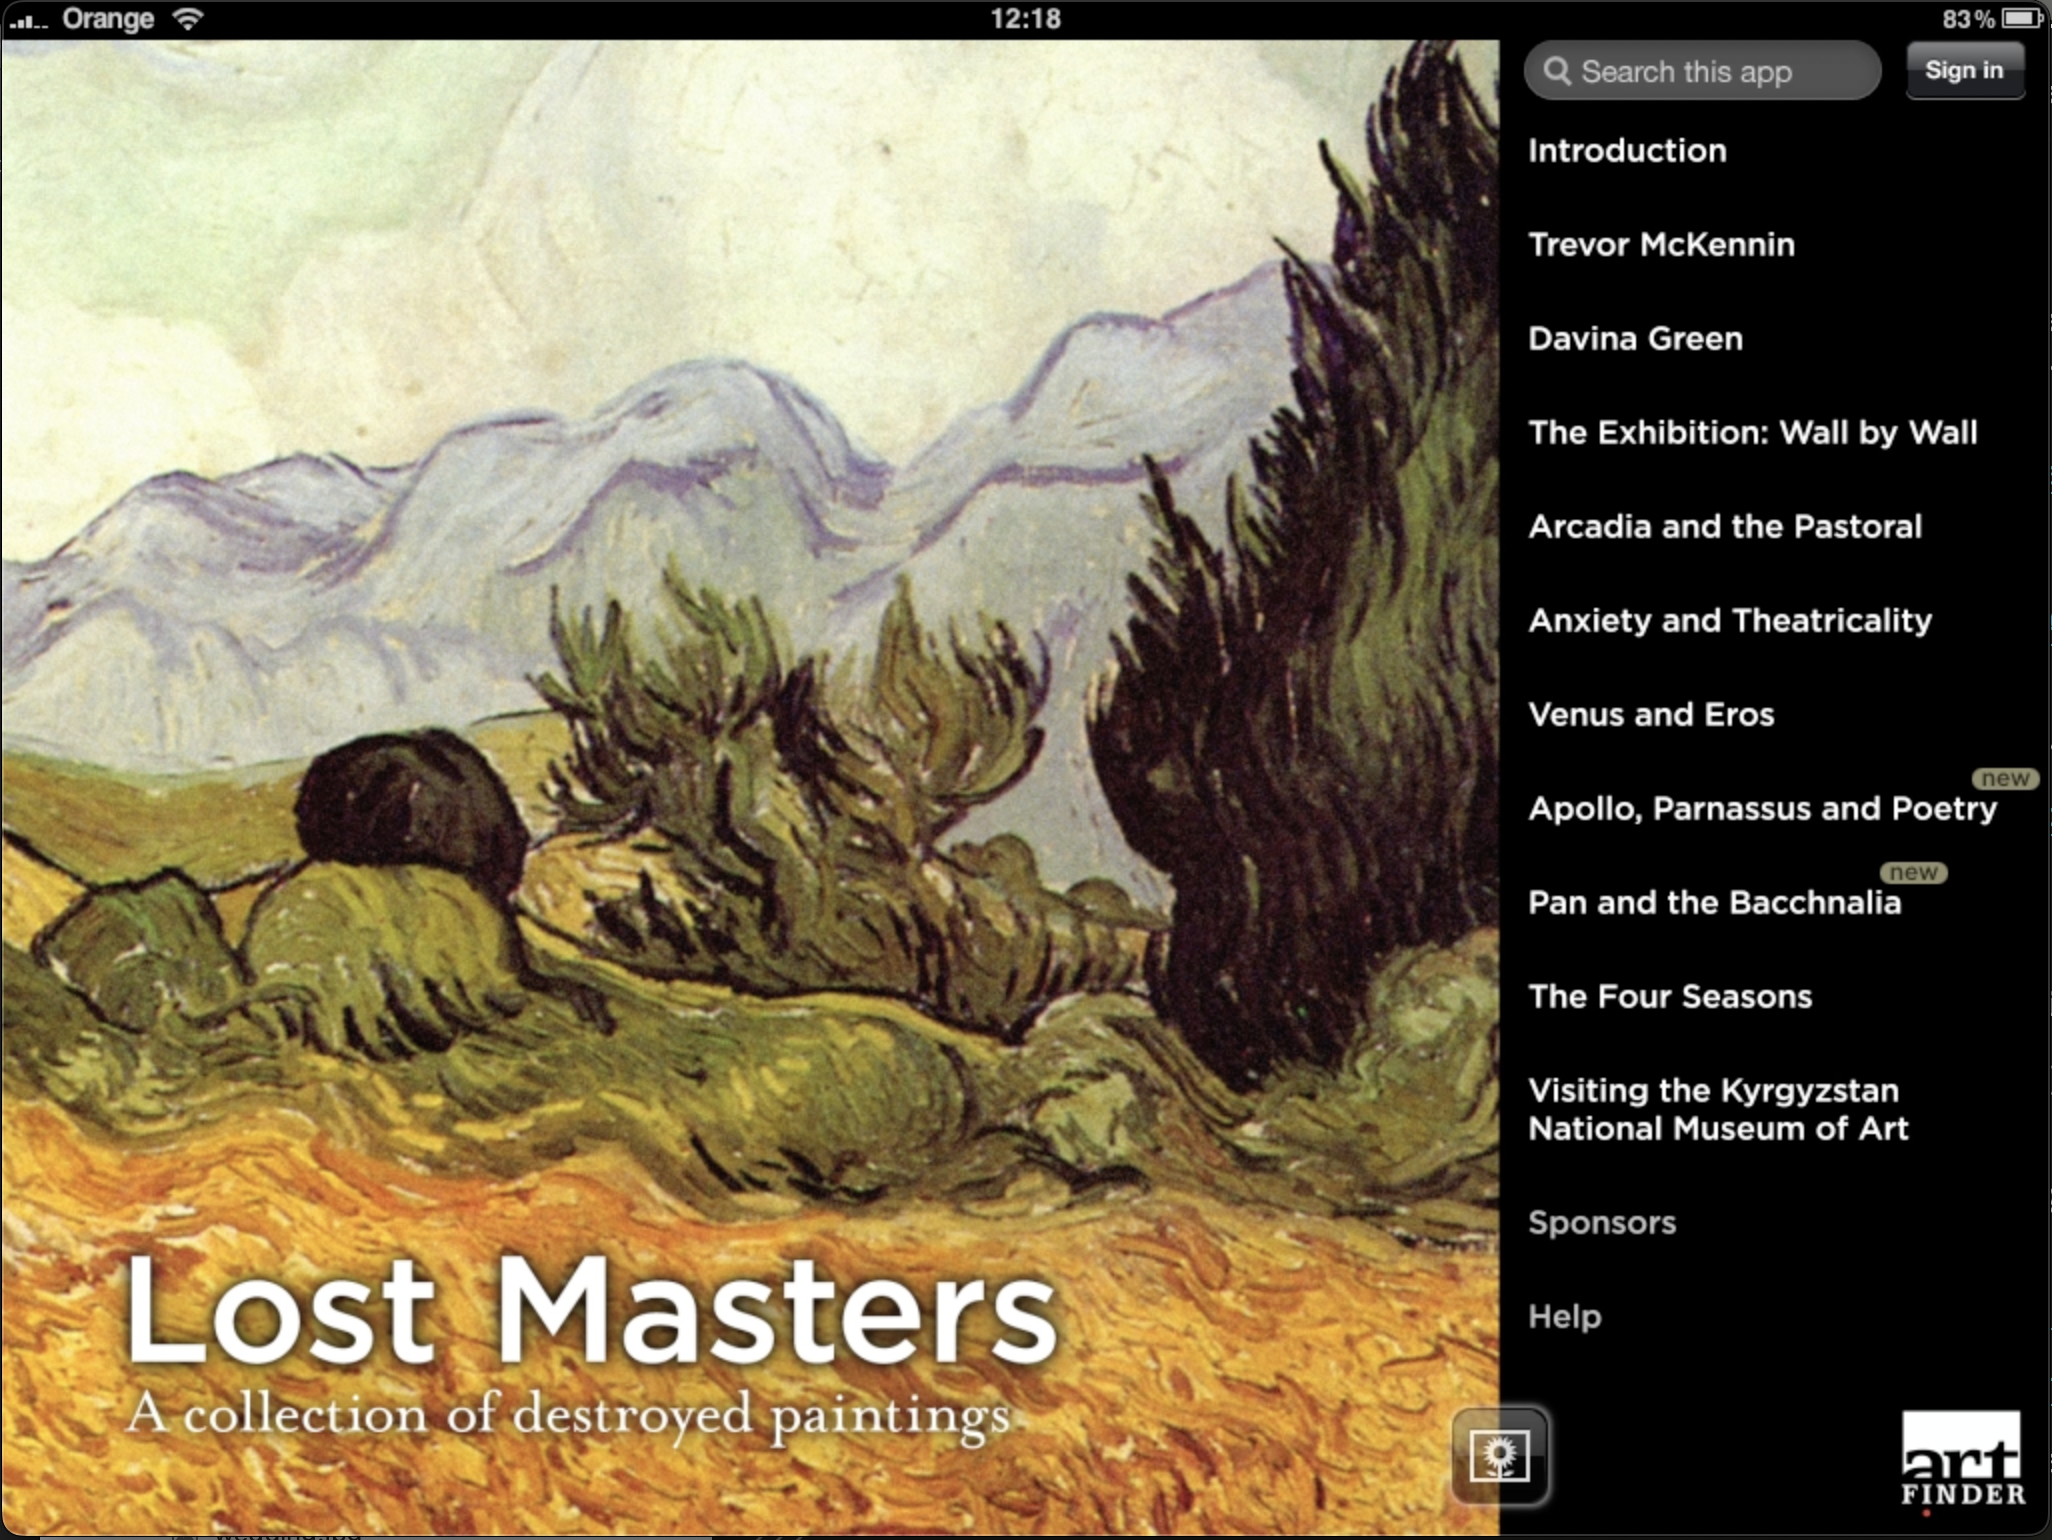 Artfinder iPad app